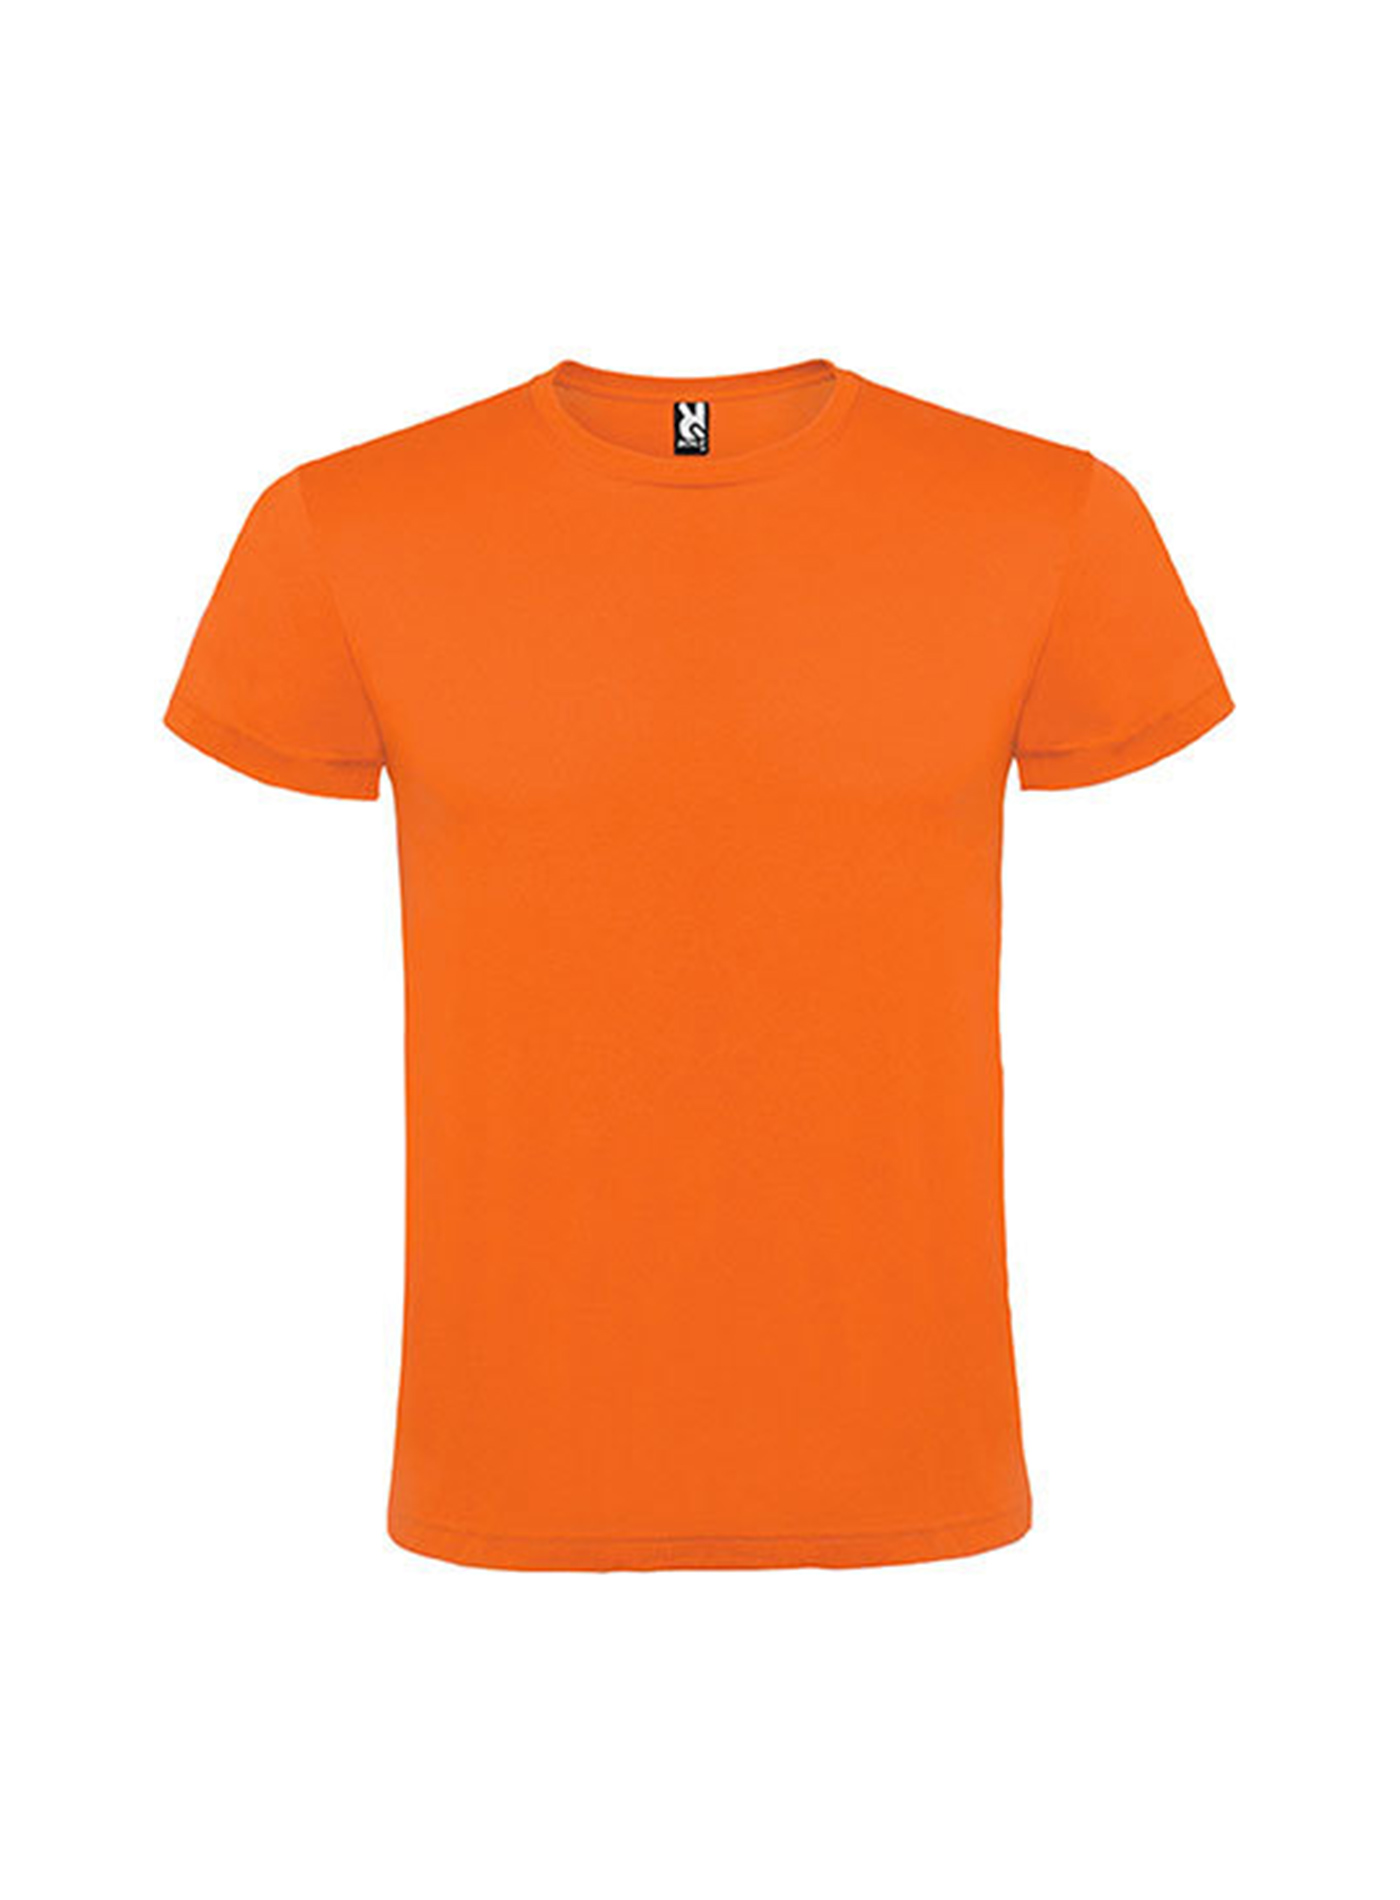 Pánské tričko Roly Atomic - Oranžová XL